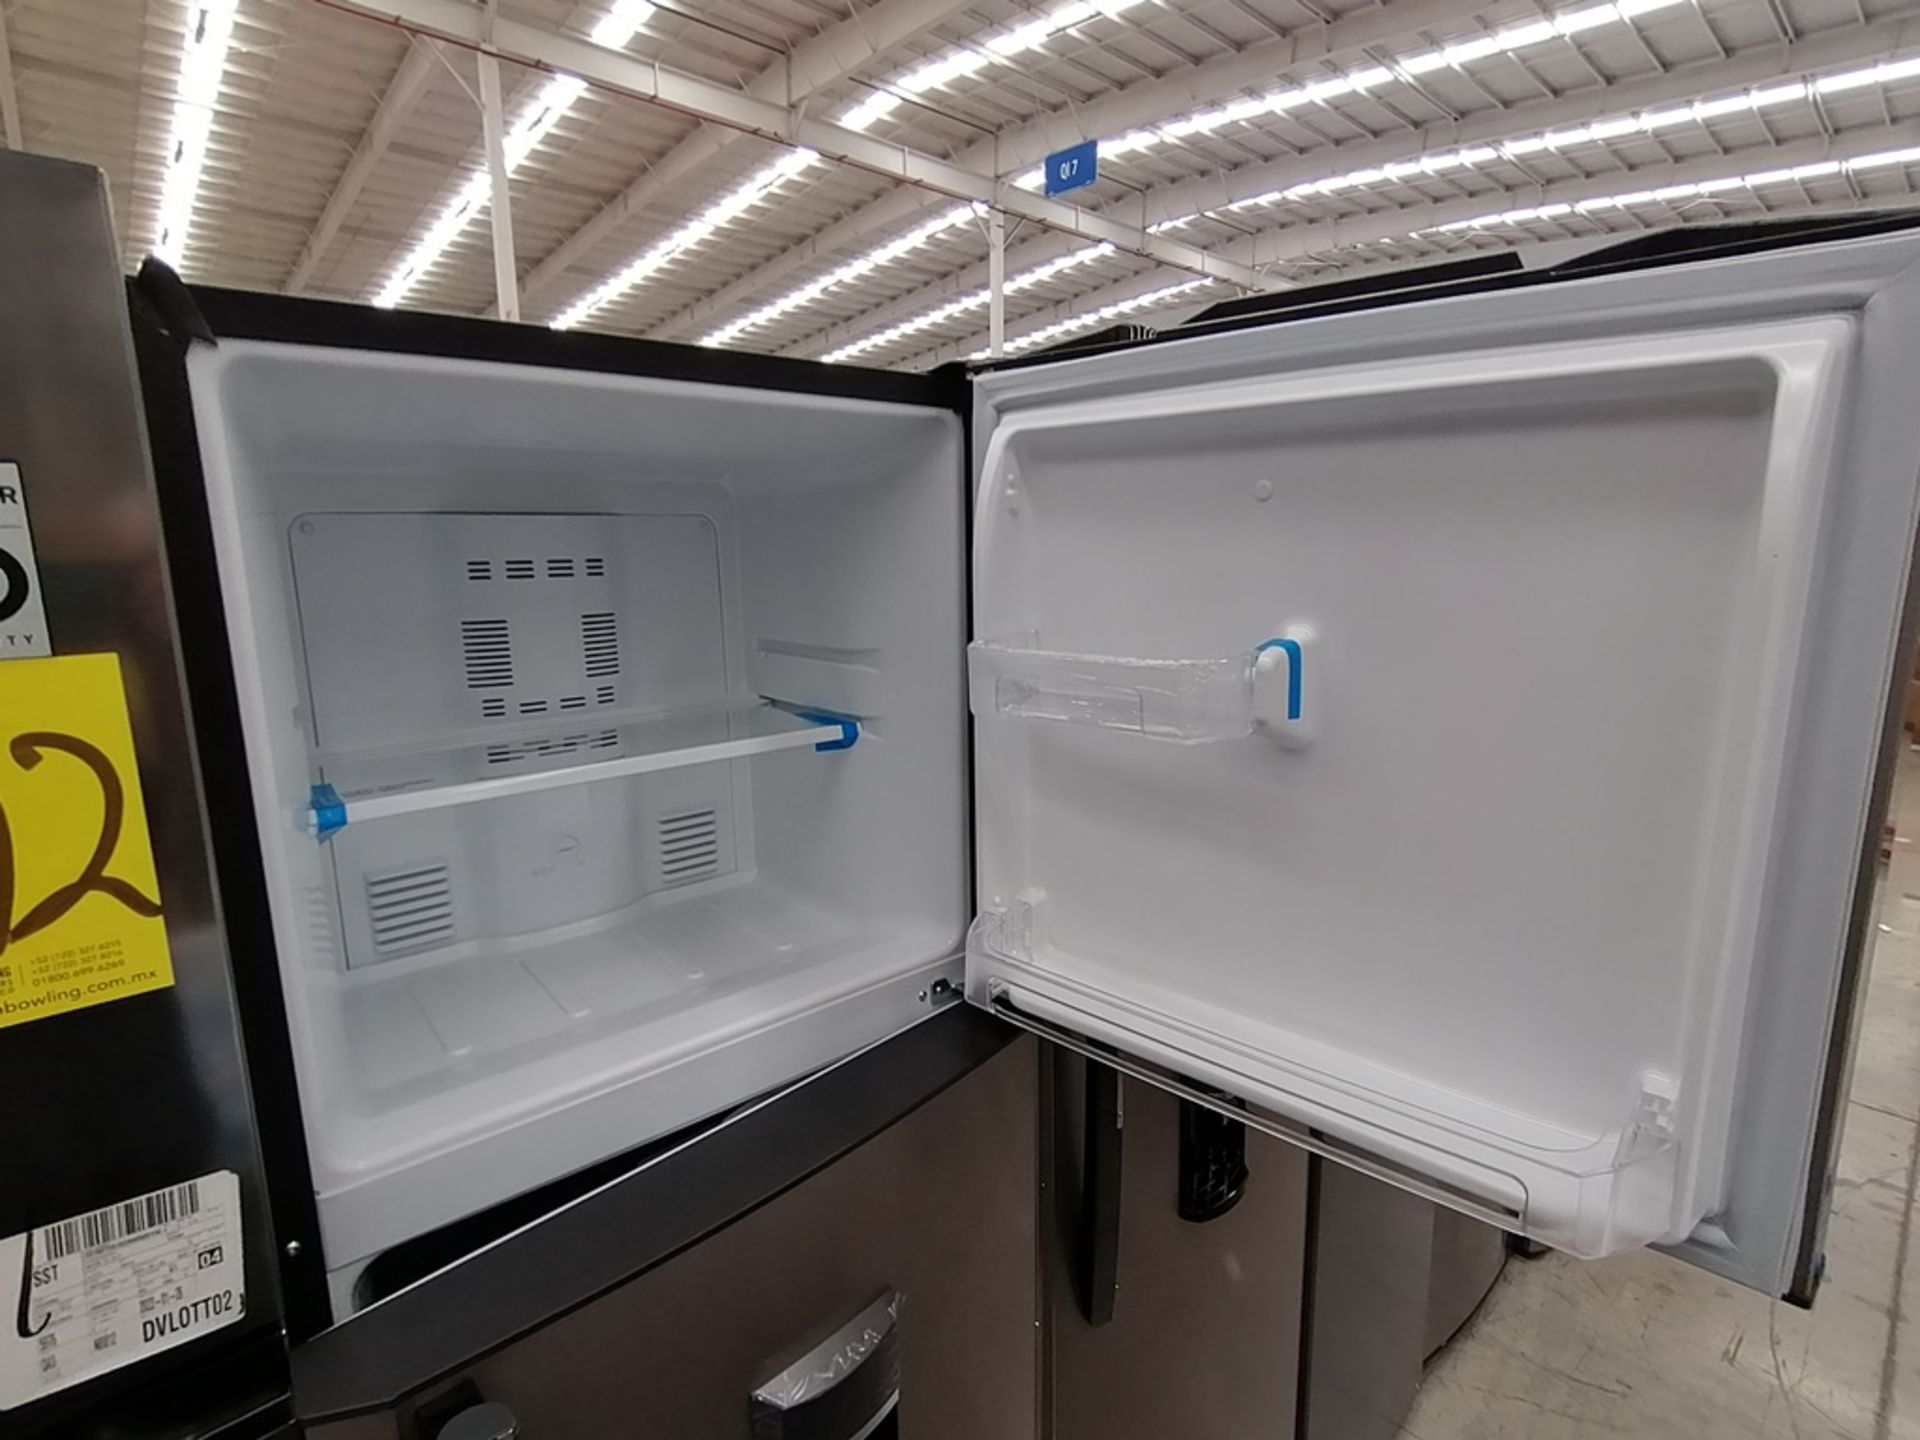 1 Refrigerador con Dispensador de Agua Marca Mabe, Color Gris, Modelo RMA300FJMR, Serie 2112B707142 - Image 9 of 13